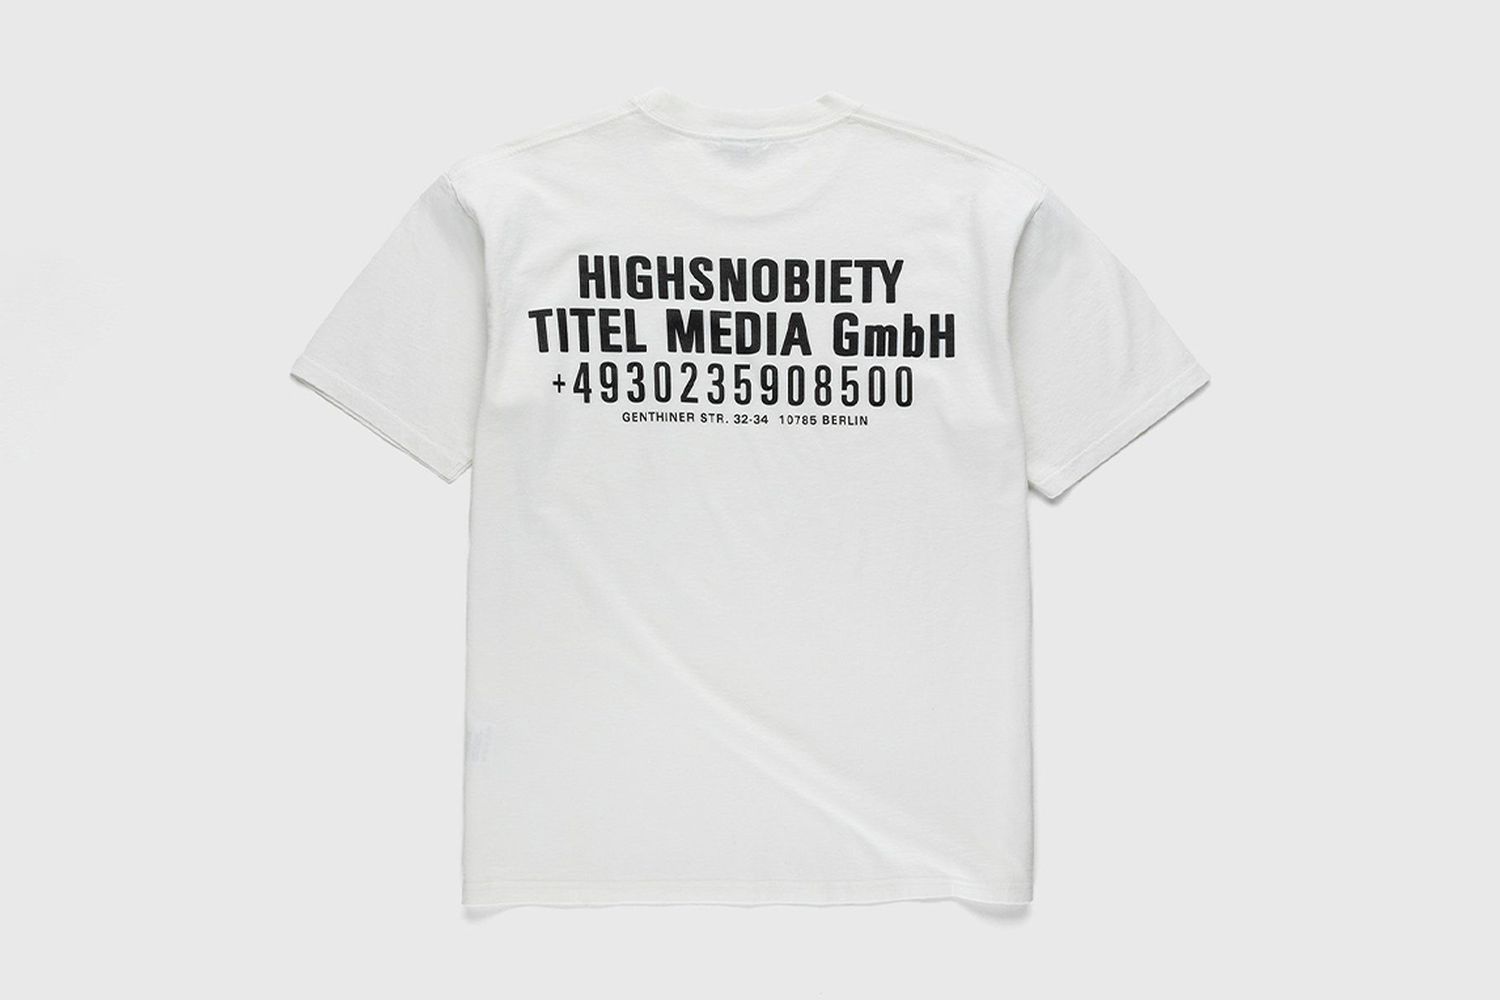 Titel Media GmbH T-Shirt